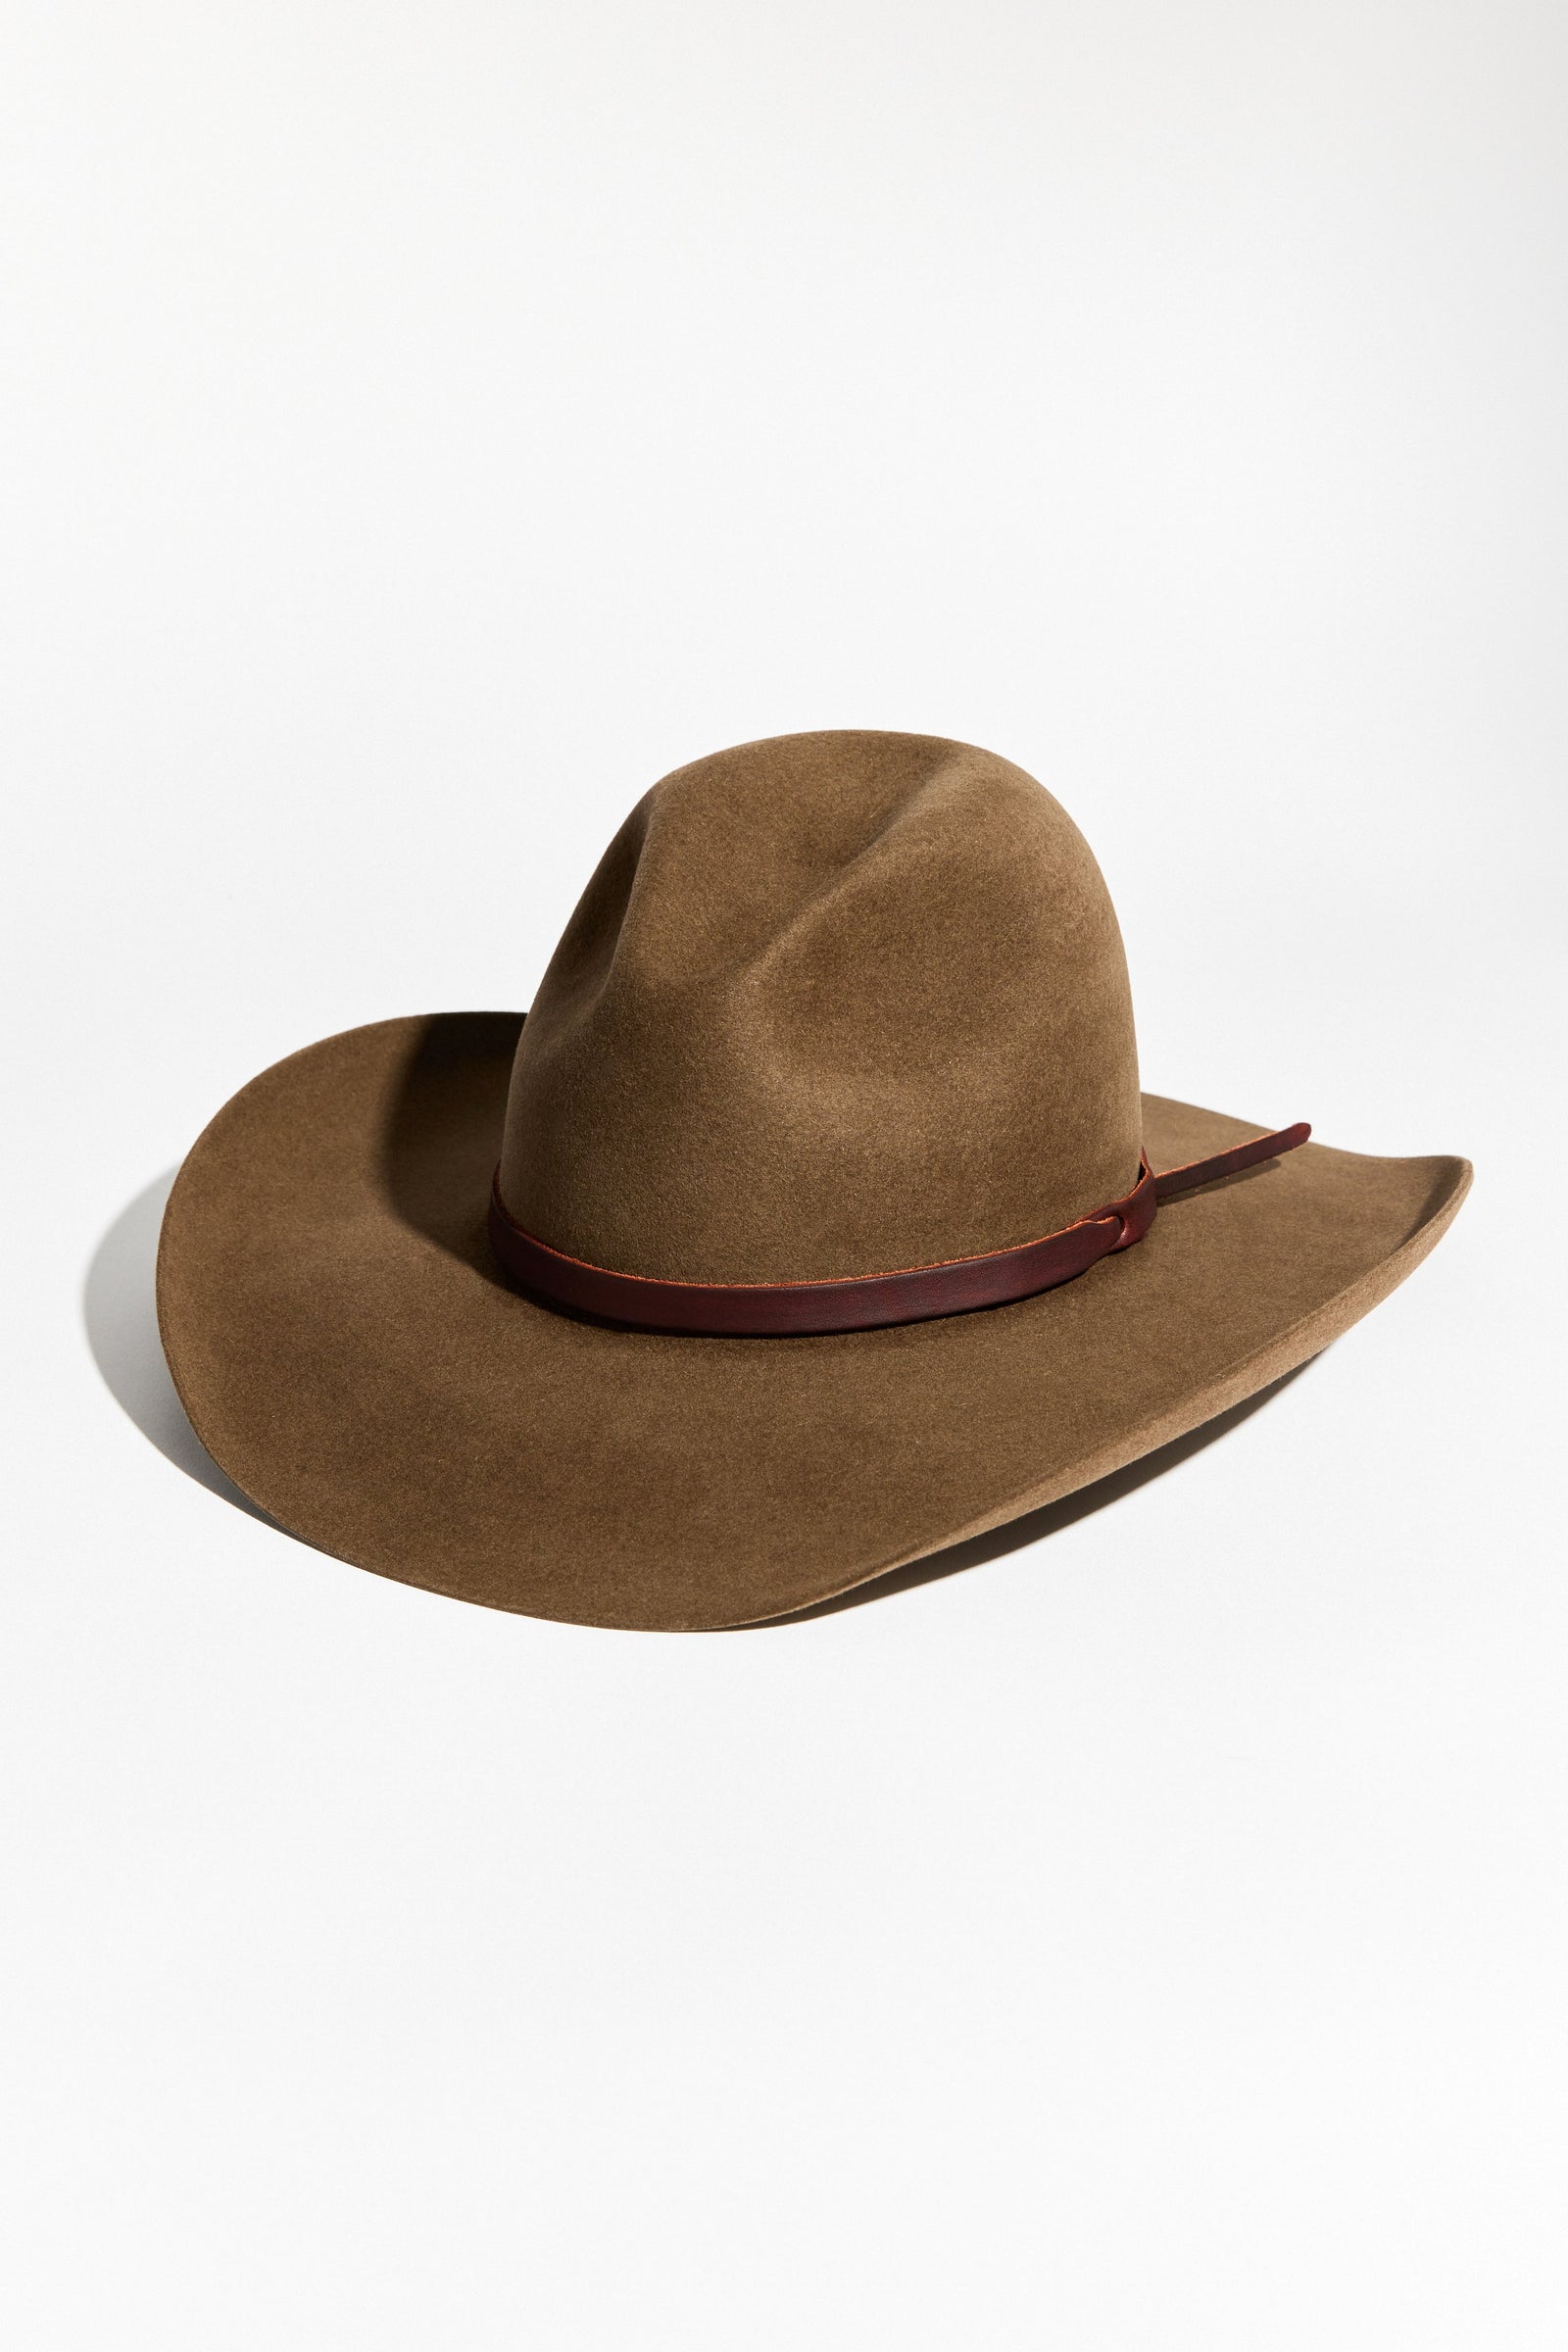 Beth Dutton's Low Gus Crown Olive Cowboy Hat